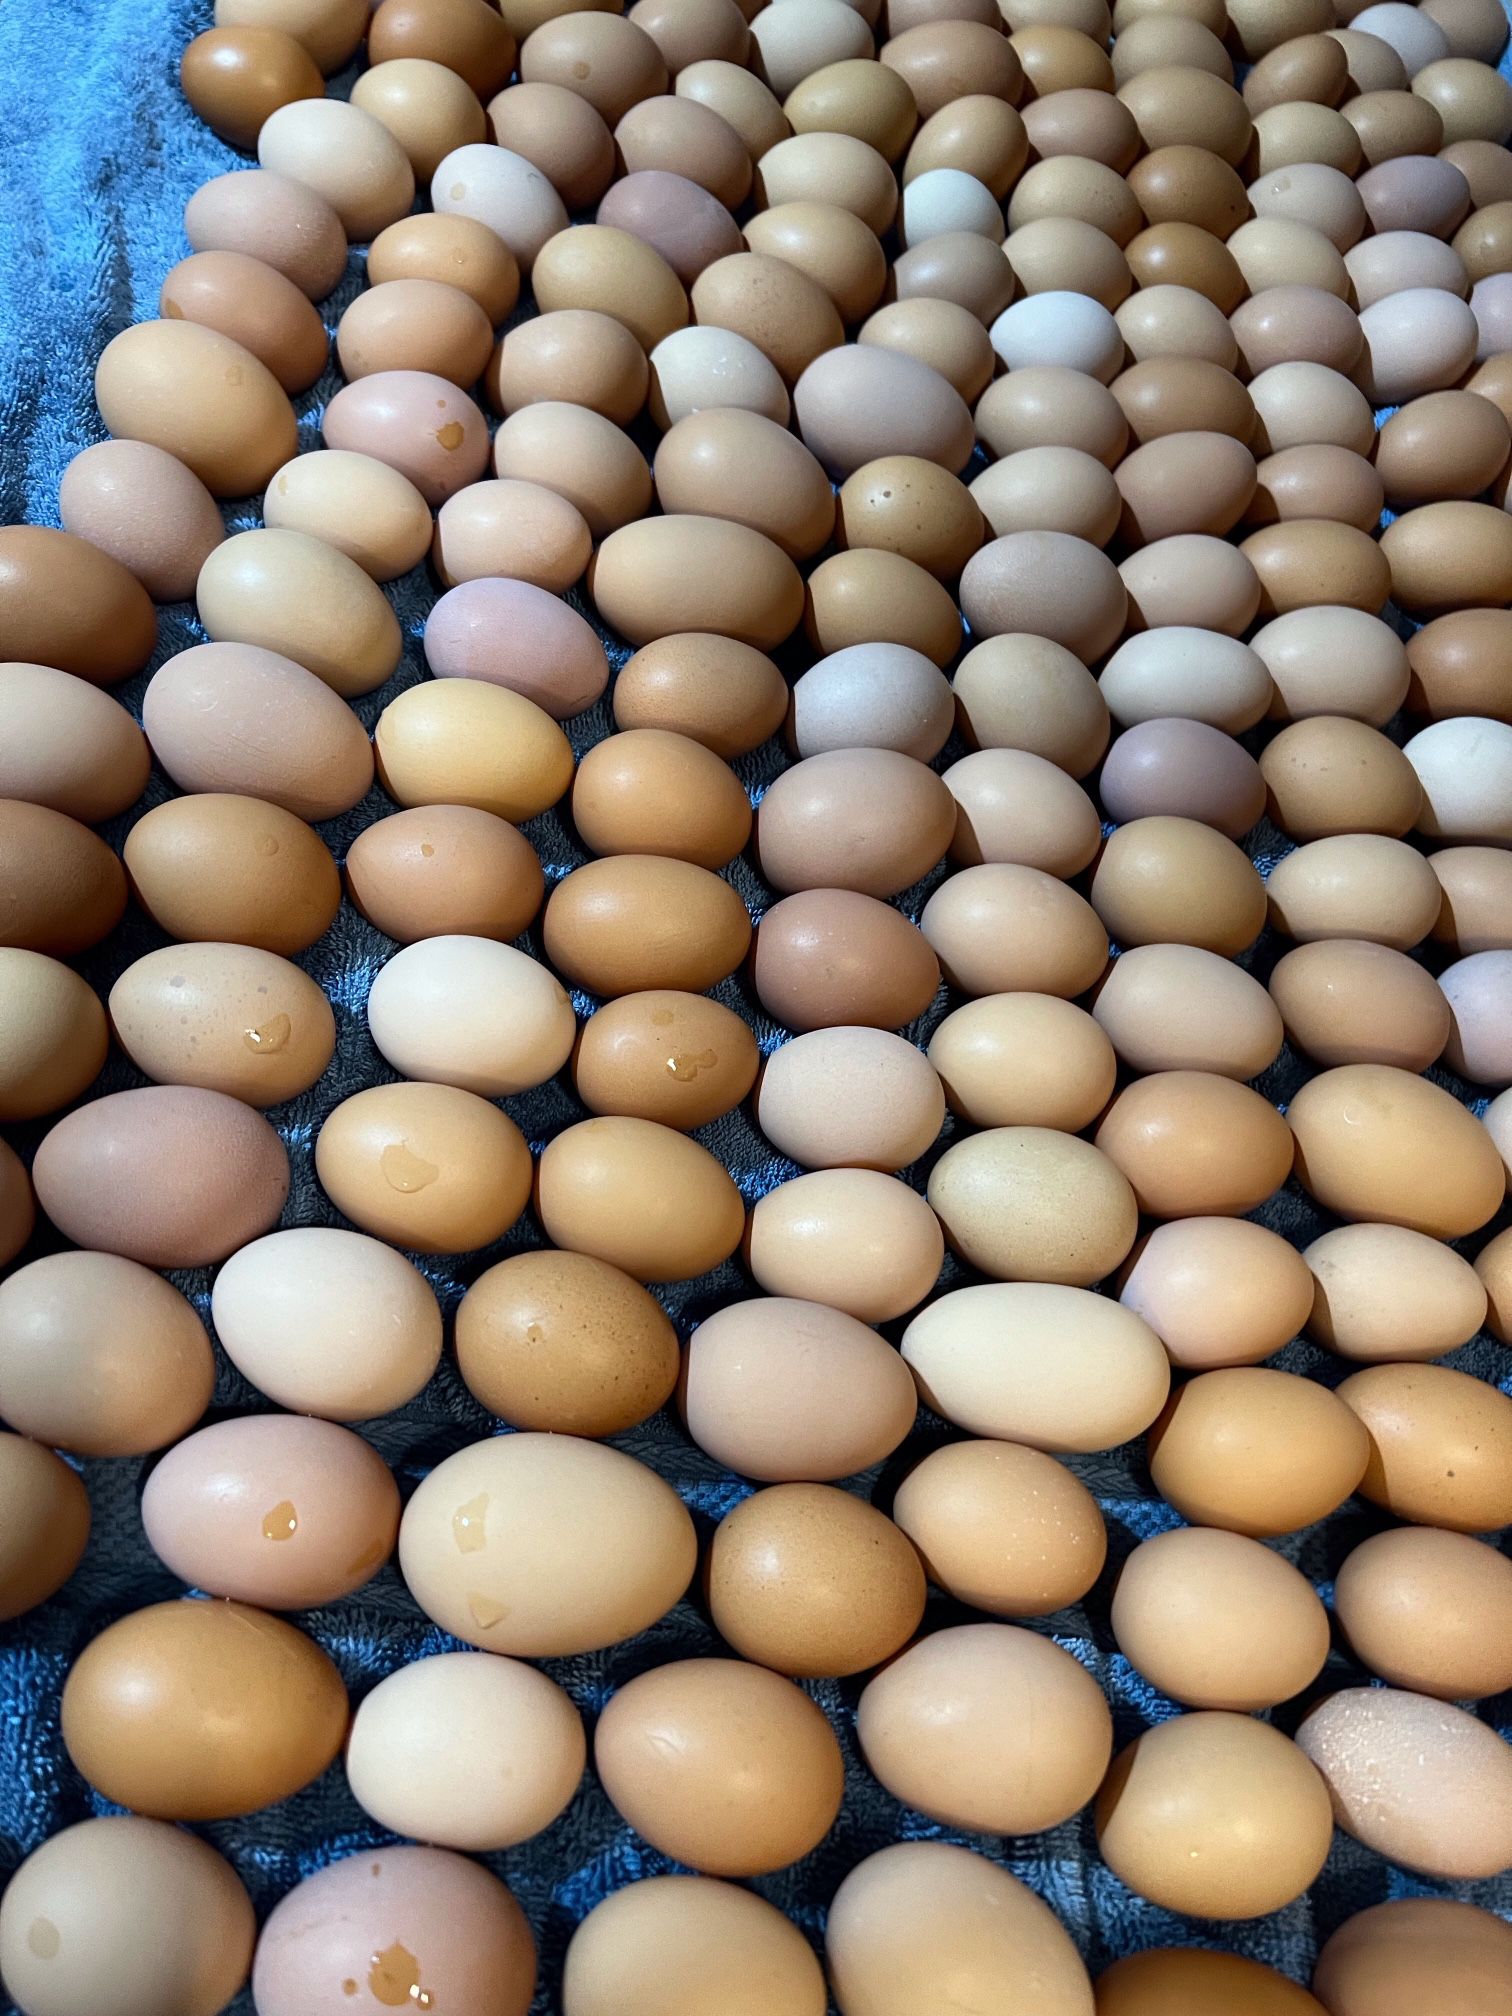 Local Fresh Farm Eggs